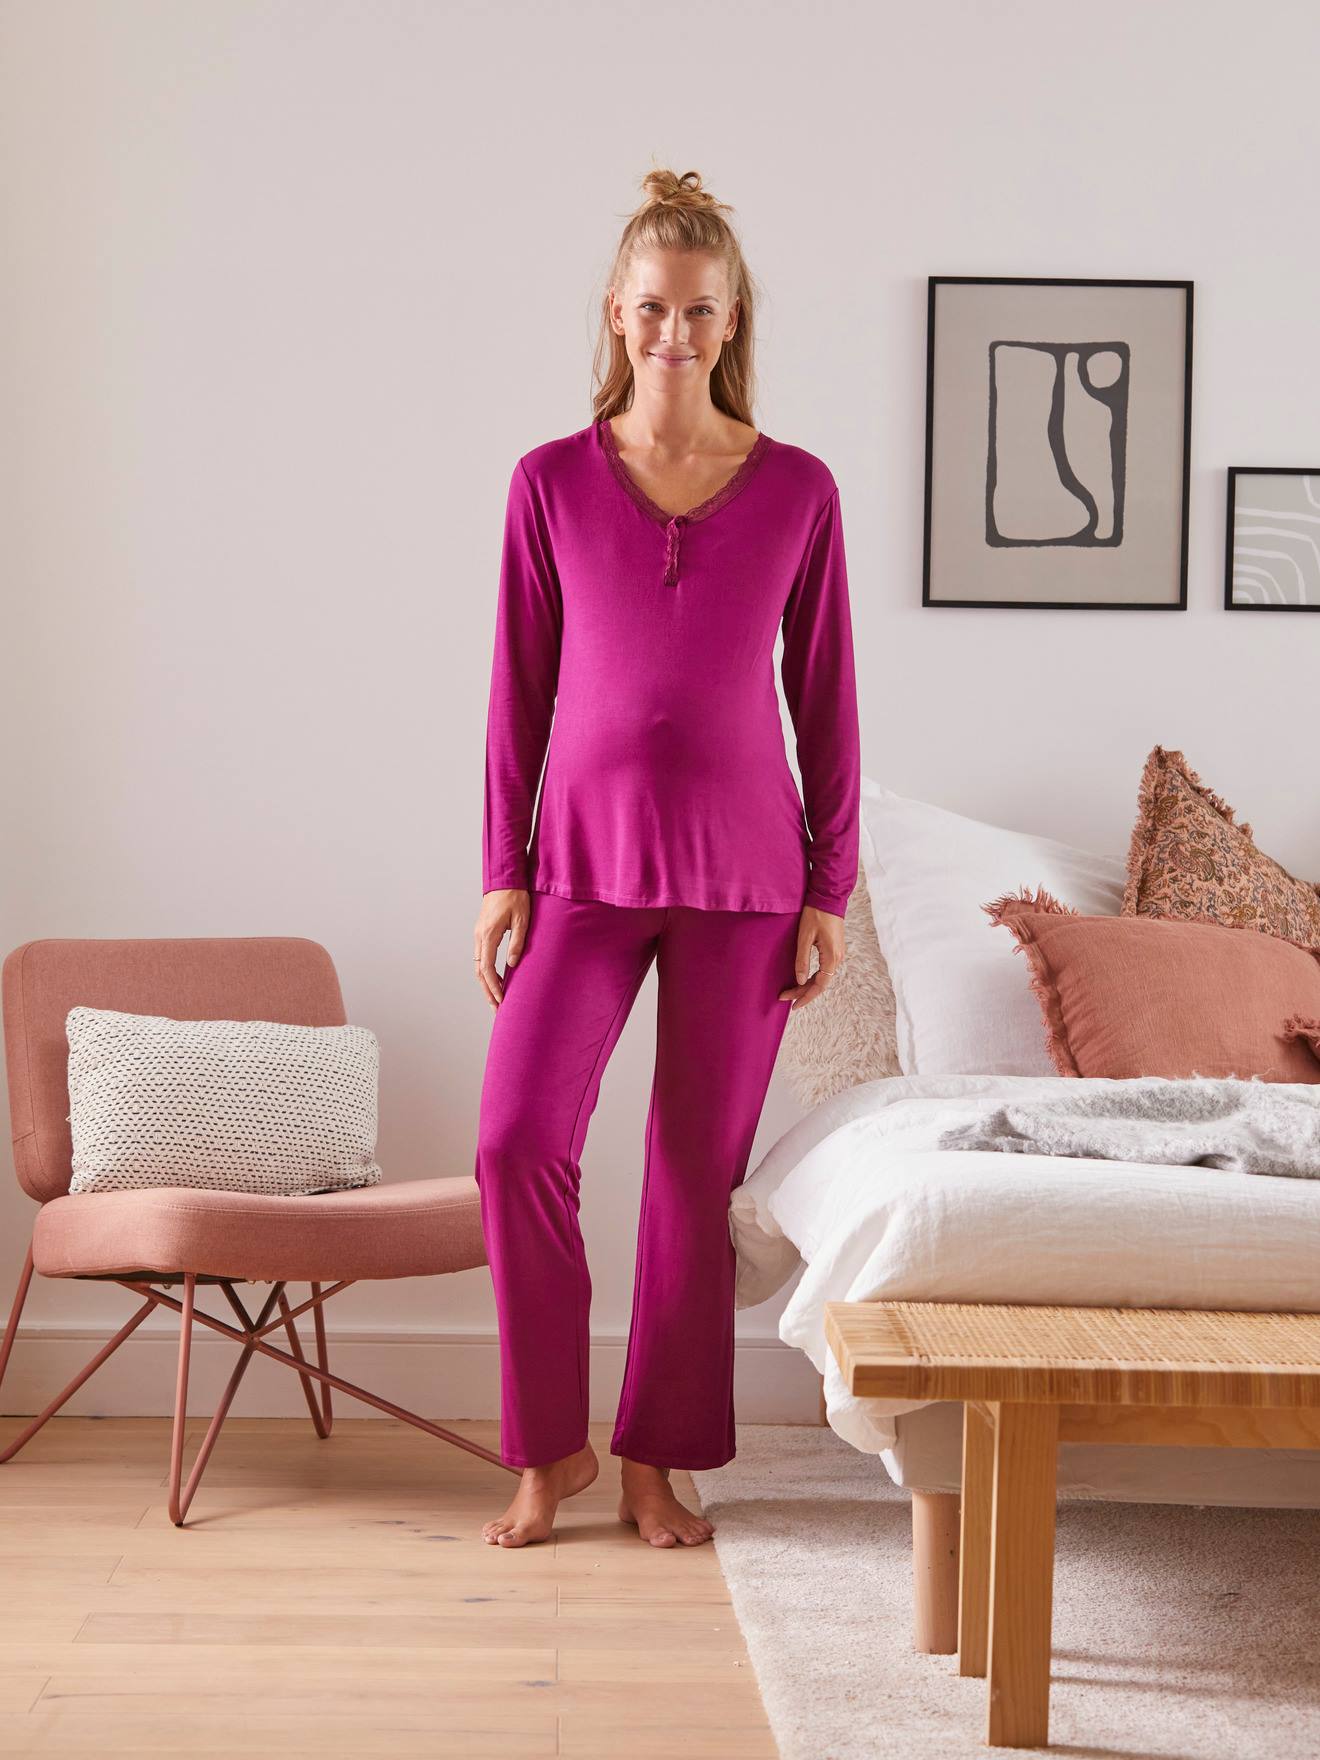 https://media.vertbaudet.com/Pictures/vertbaudet/244875/2-piece-pyjamas-maternity-nursing-special.jpg